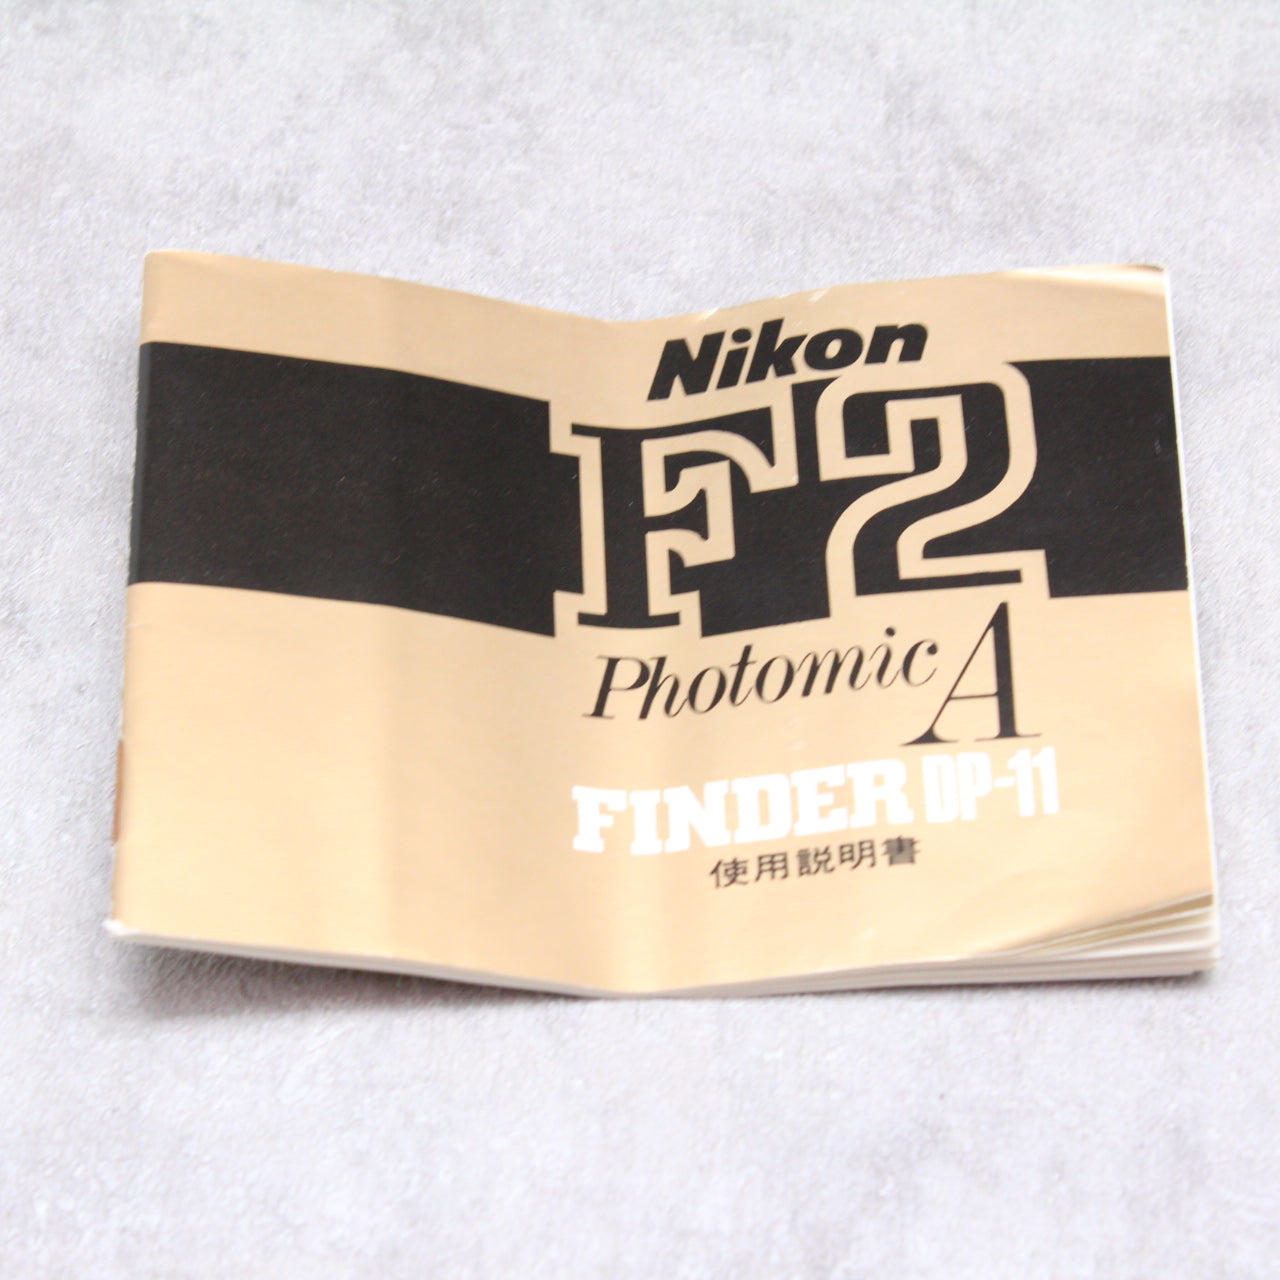 中古品 《オーバーホール済み！》Nikon F2 アイレベル + フォトミックA DP-11 【11月15日(火)のYouTube生配信でご紹介】